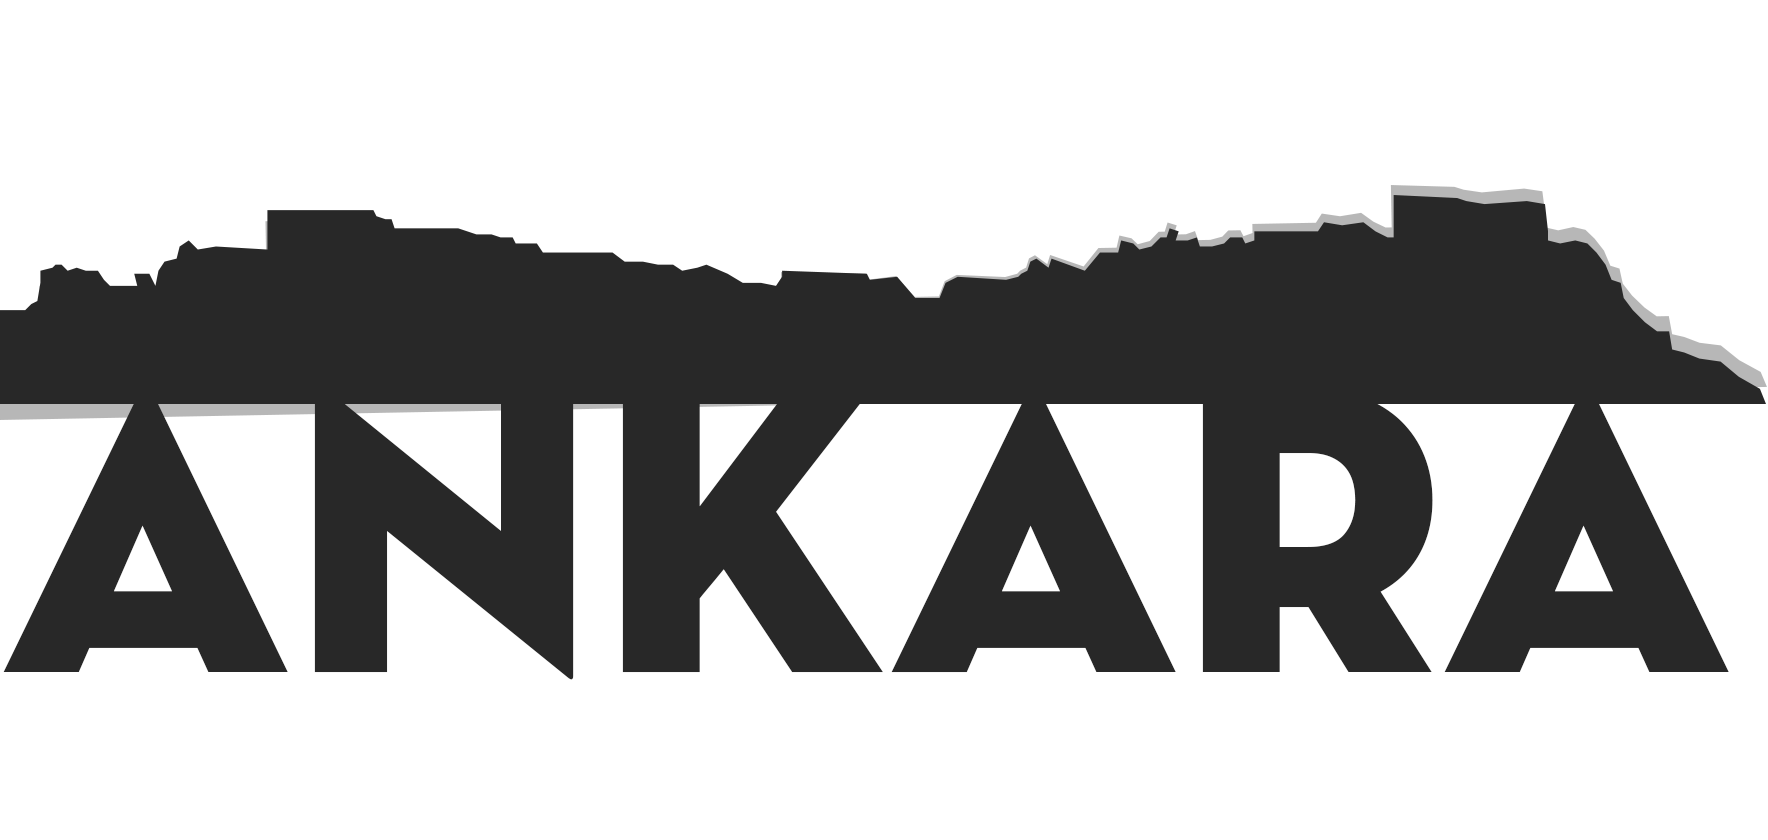 Ankara Logo - Wallpaper : illustration, text, logo, Turkey, brand, Ankara Castle ...